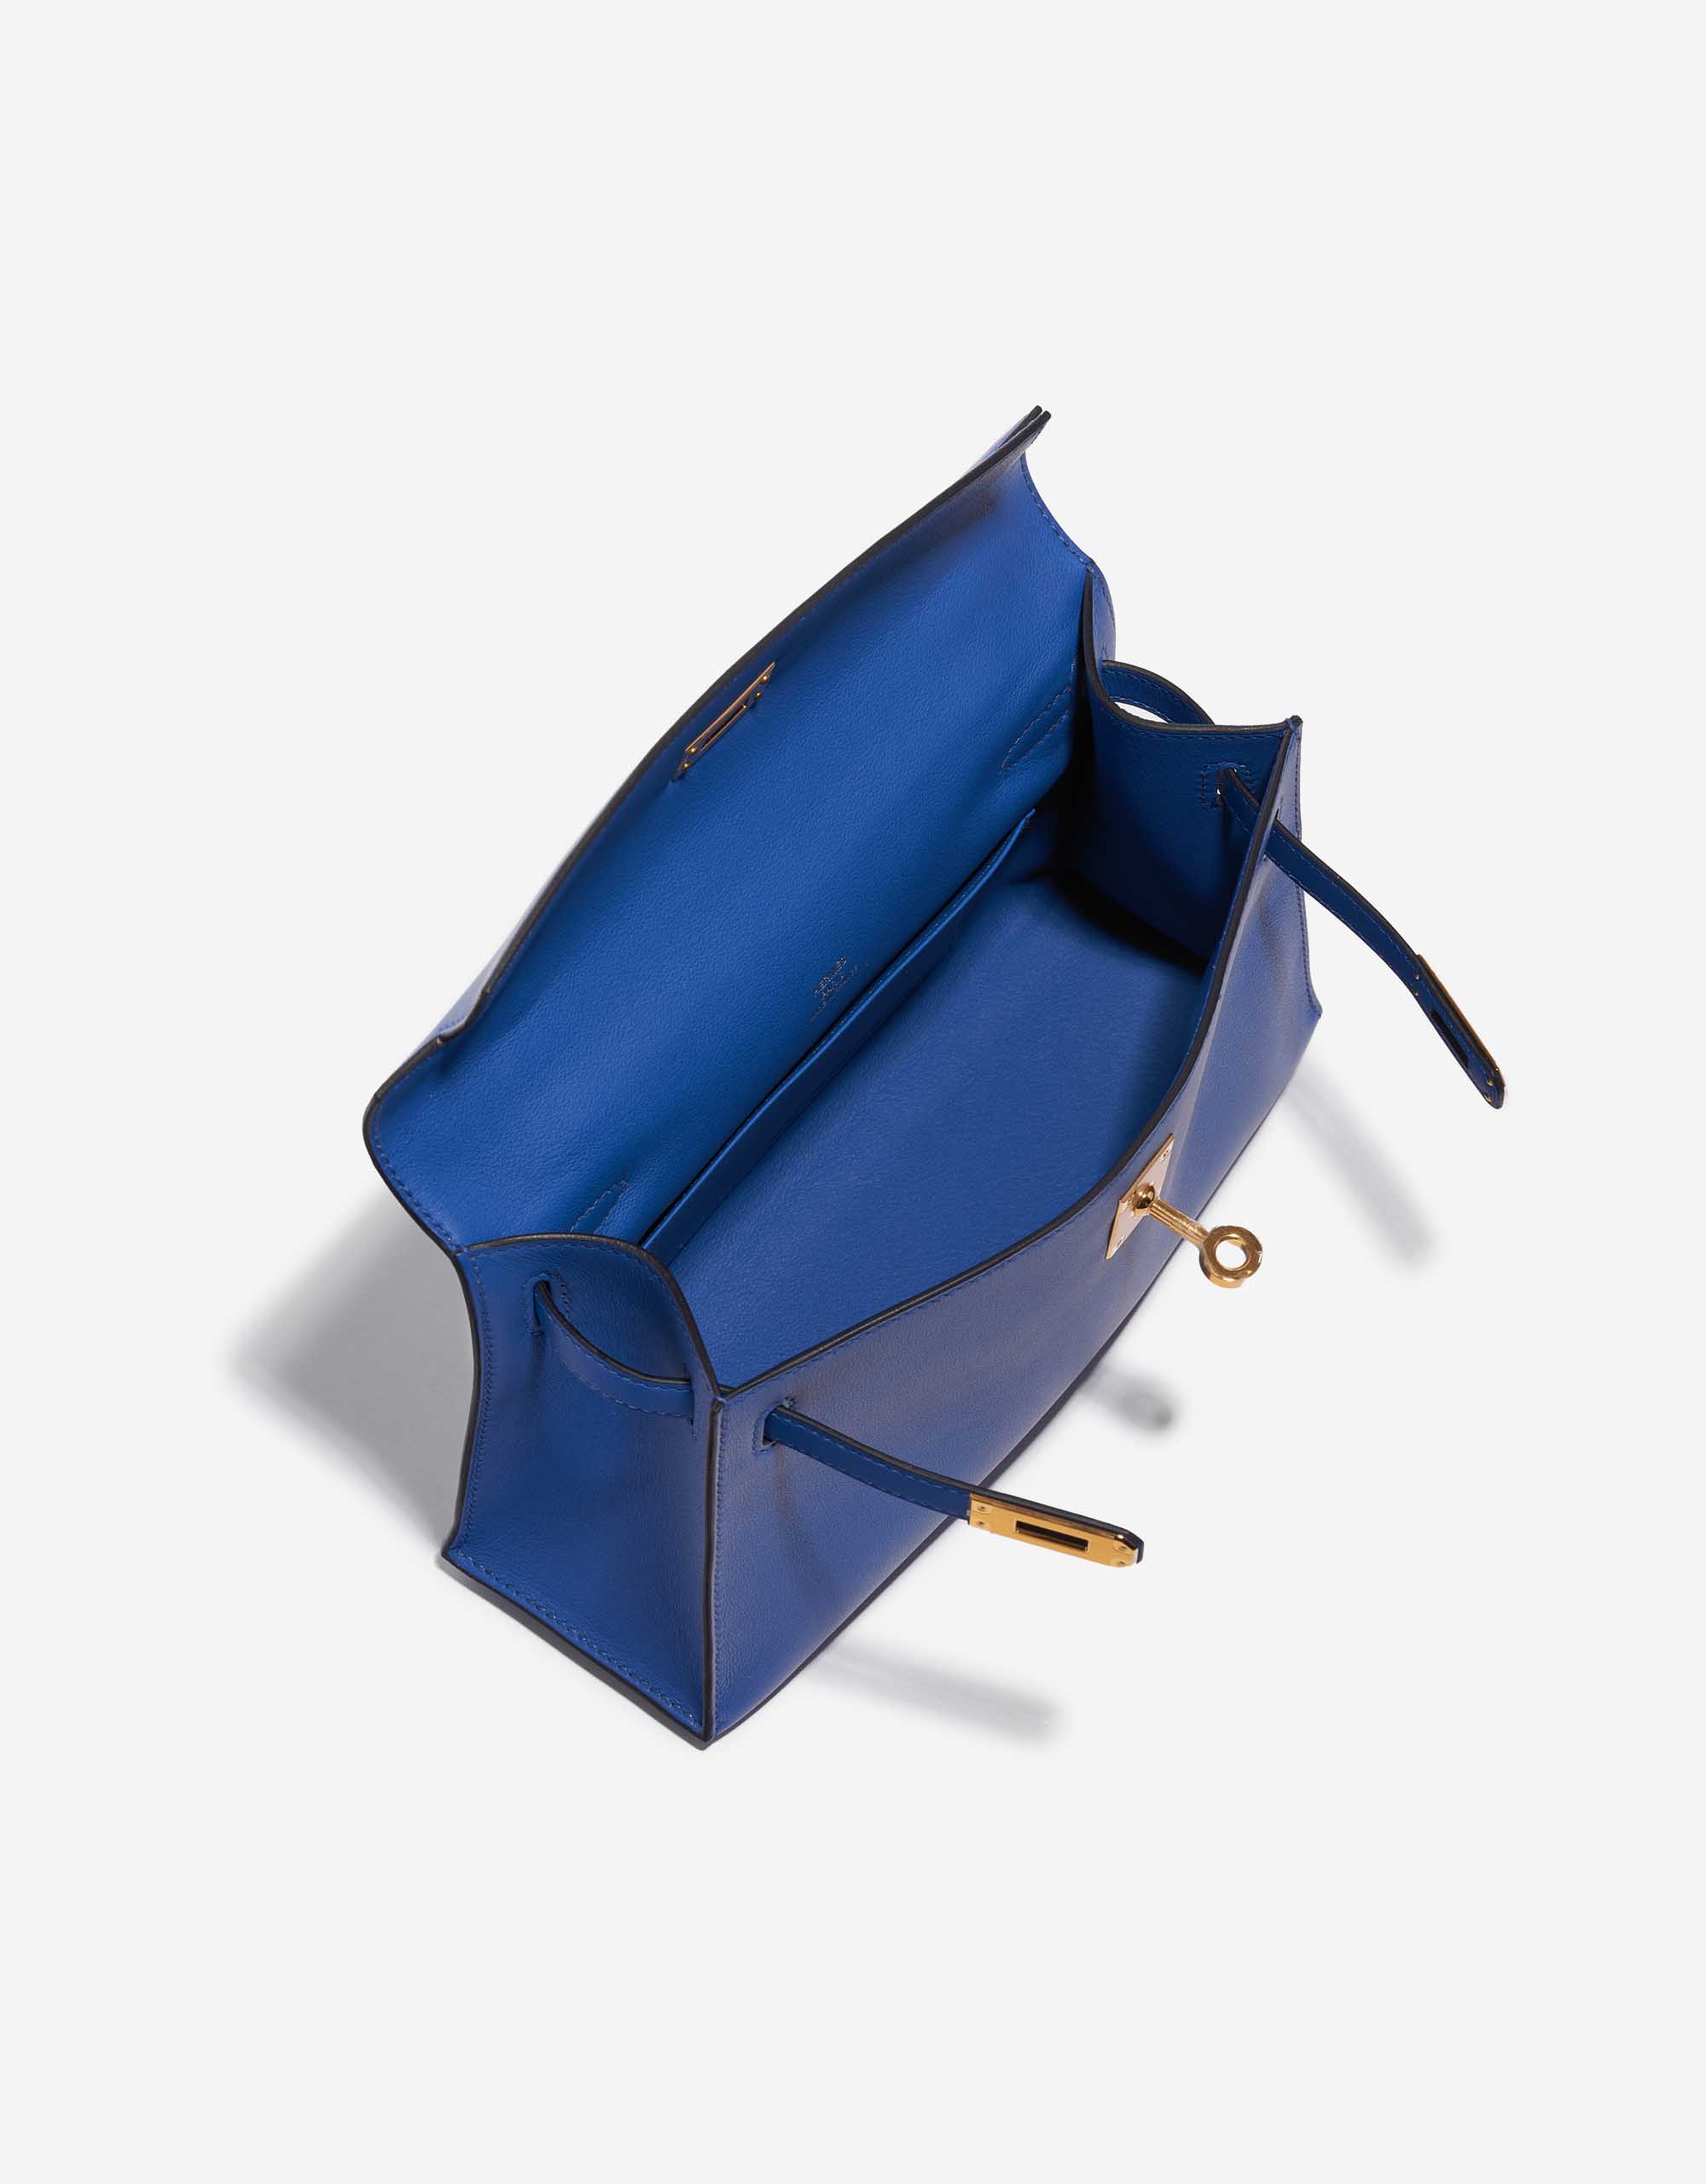 Pre-owned Hermès Tasche Kelly Pochette Swift Blue de France Blue Inside | Verkaufen Sie Ihre Designer-Tasche auf Saclab.com